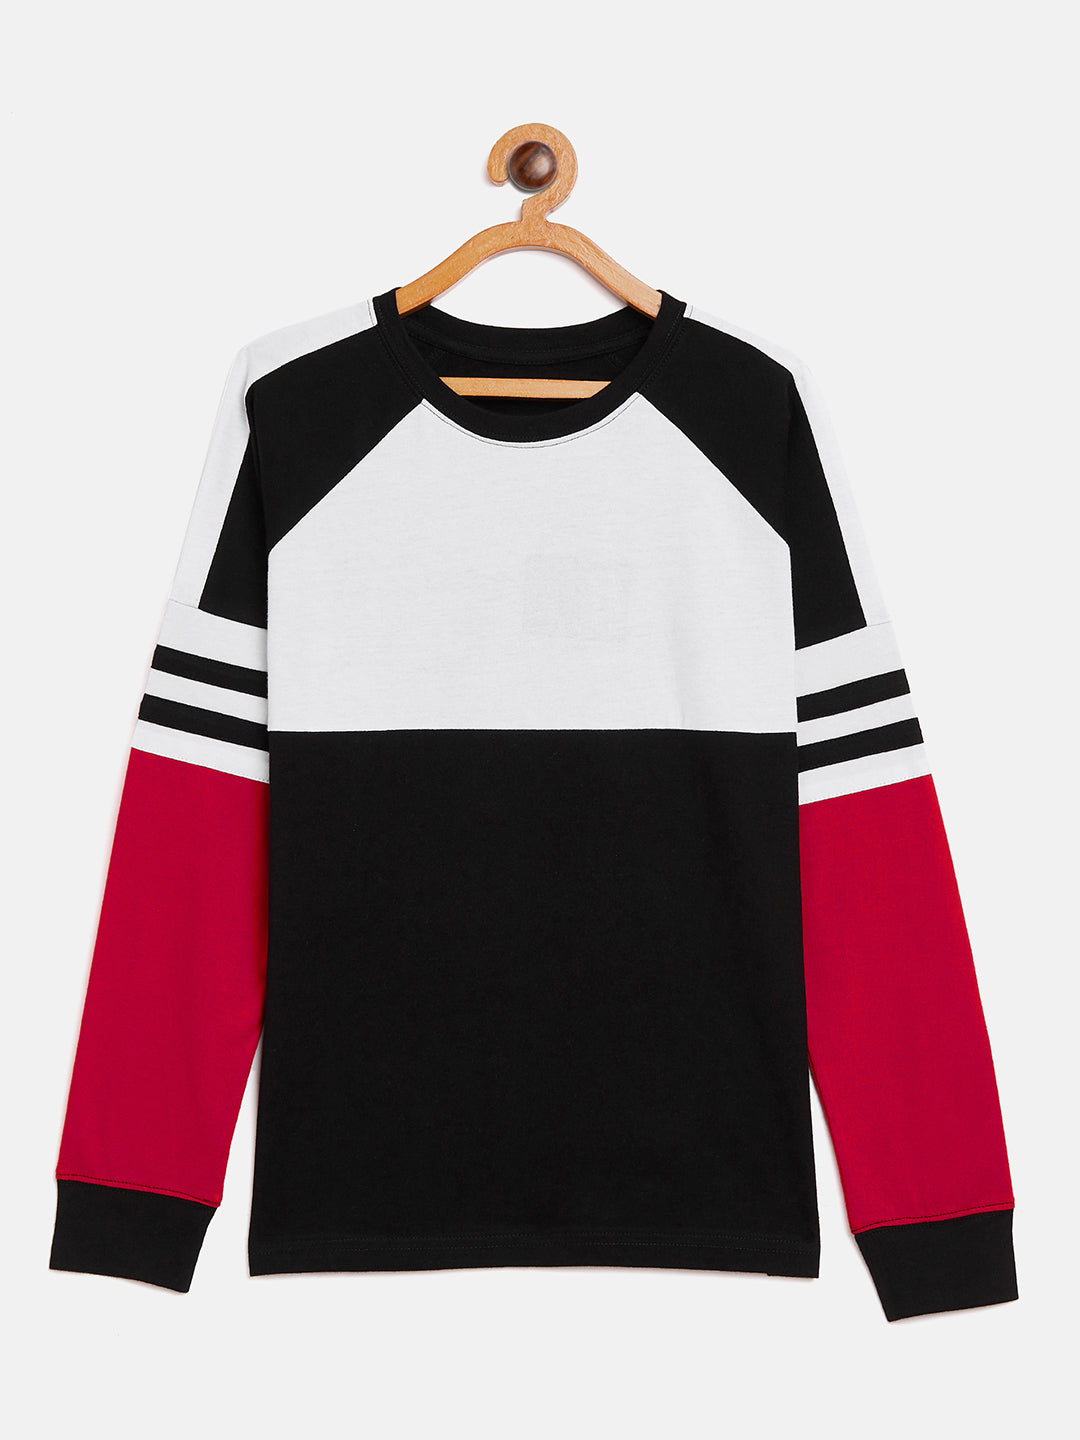 Black/White/Red Kids Full Sleeves Round NeckT-Shirt